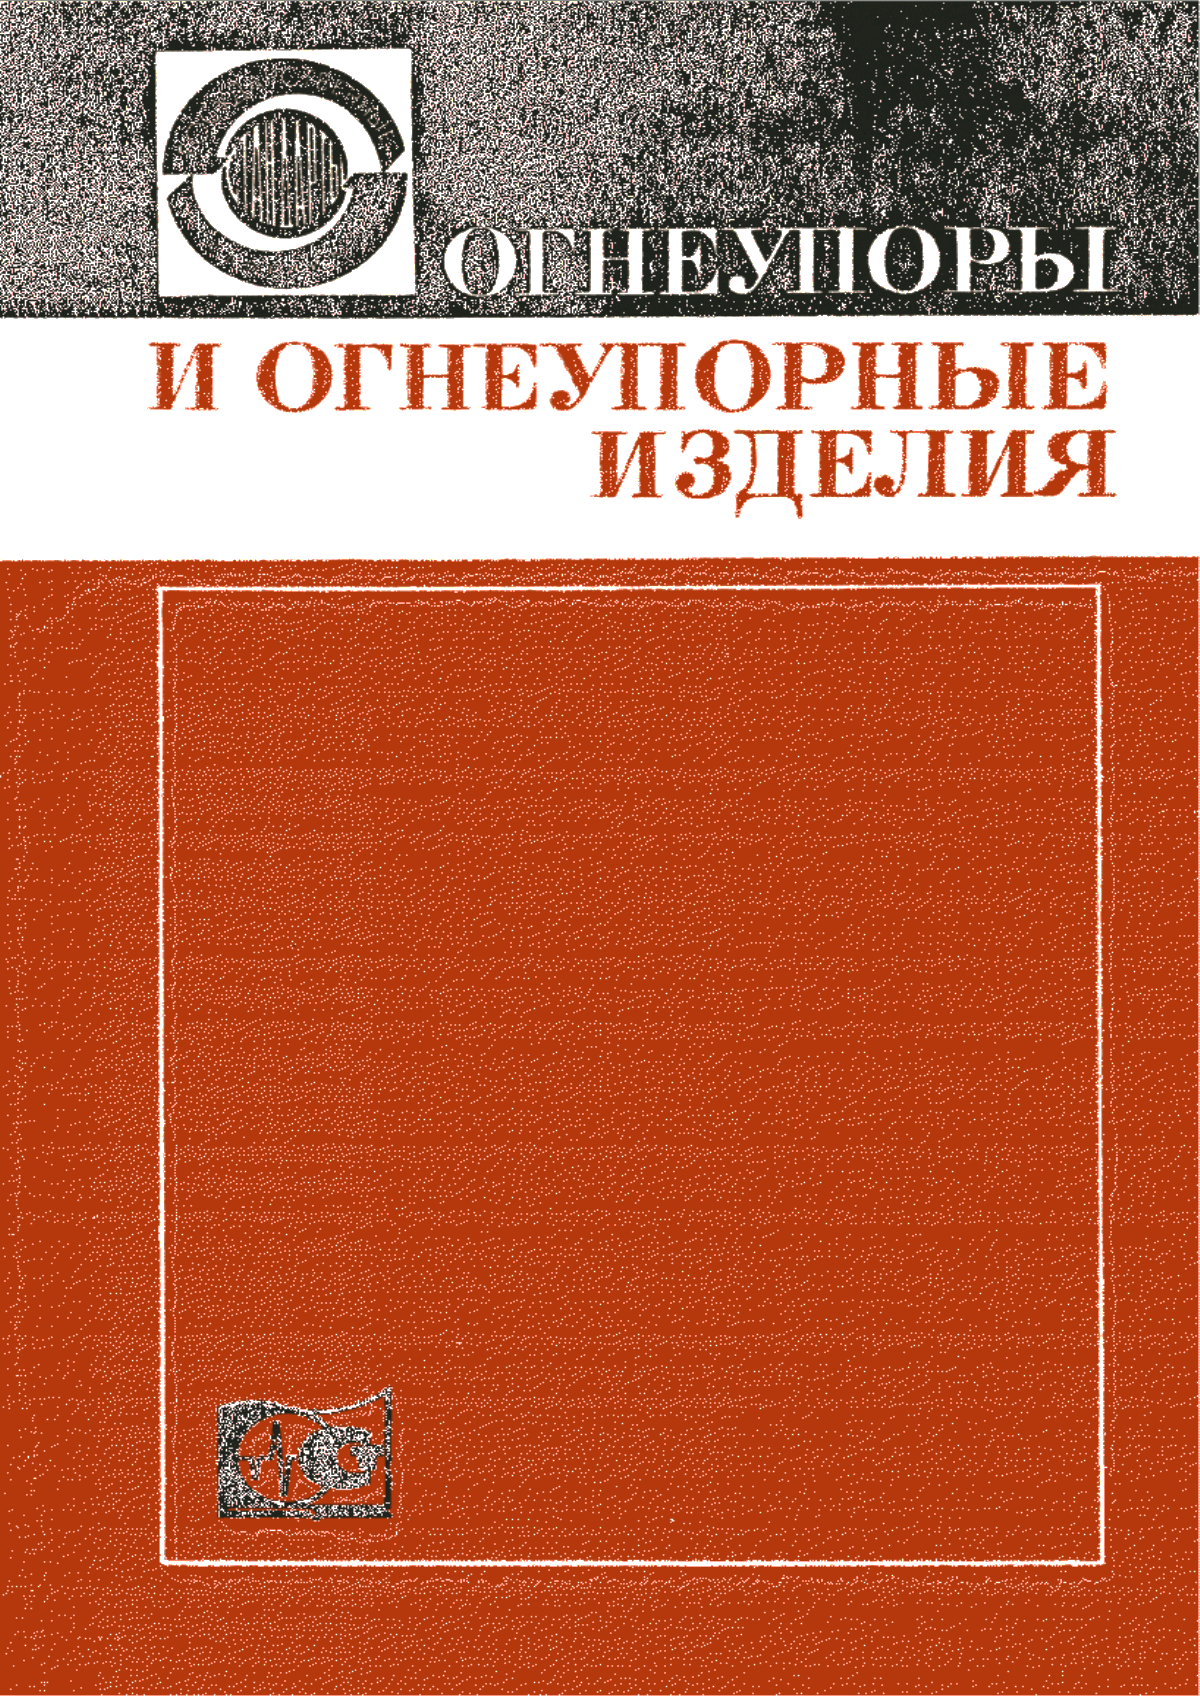 ГОСТ 19038-73 Материалы и изделия огнеупорные. Классификация бетонов